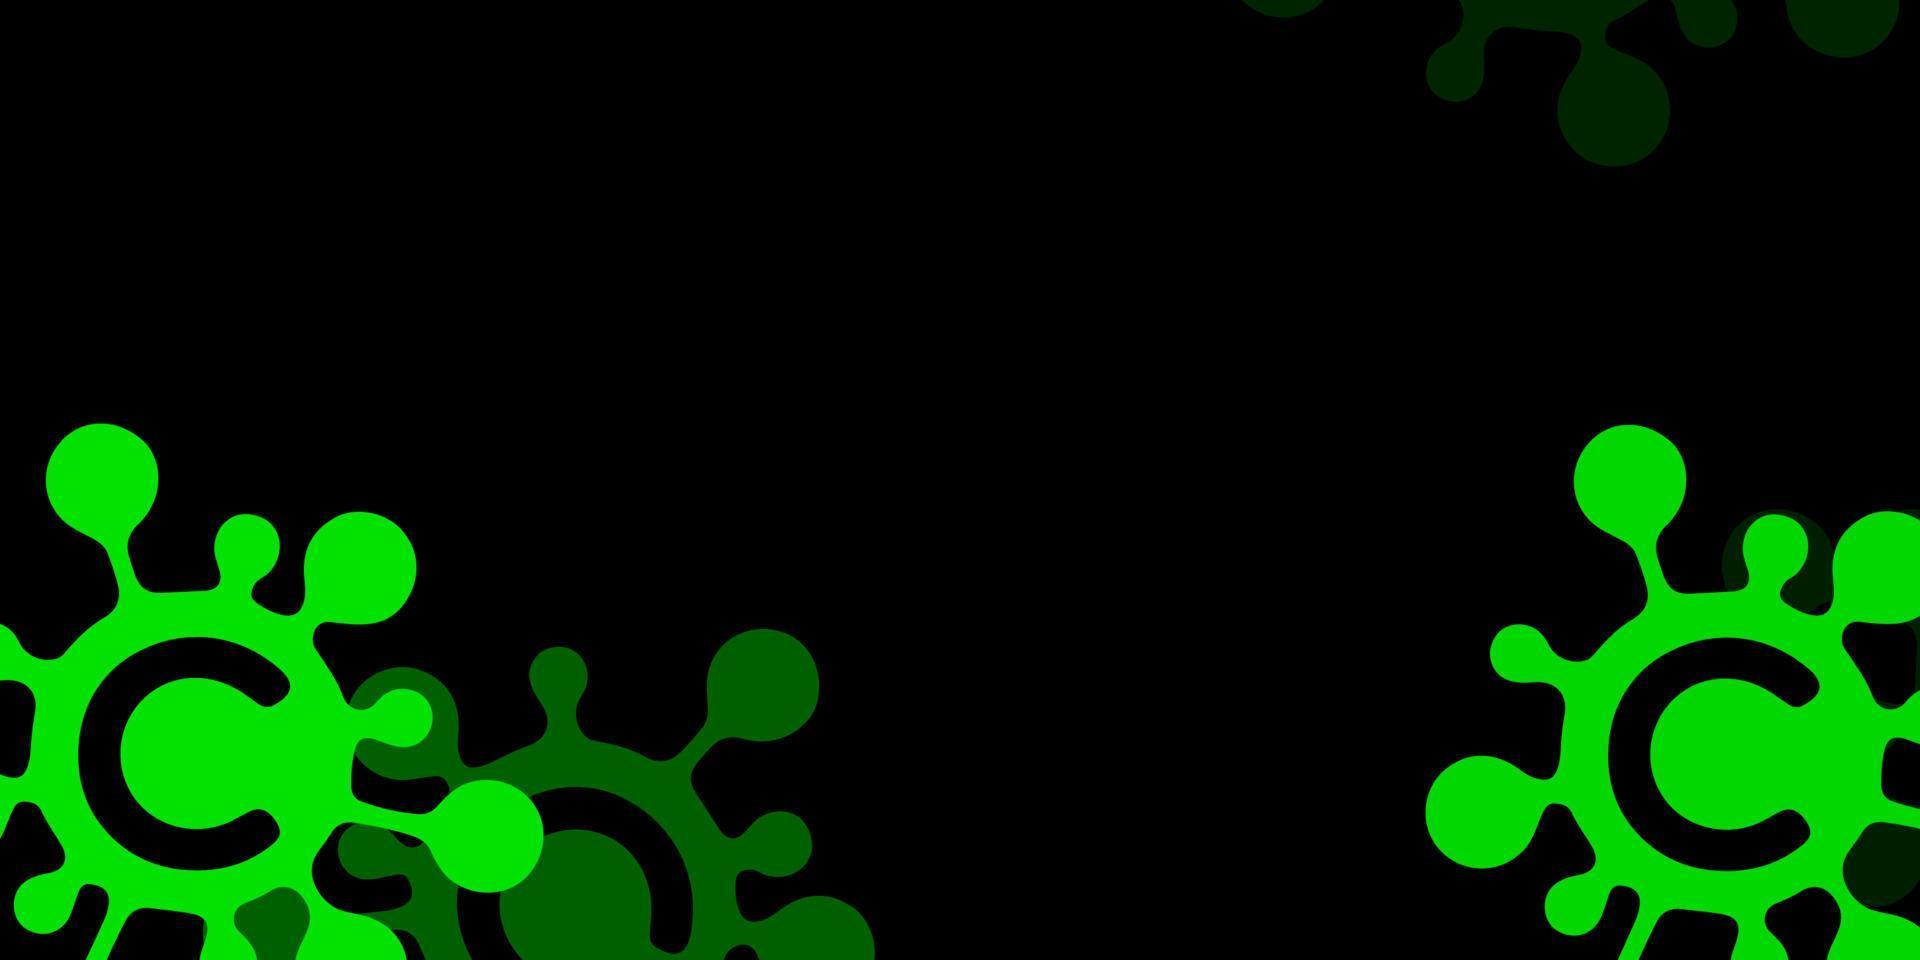 mörkgrön, gul vektorstruktur med sjukdomssymboler. vektor